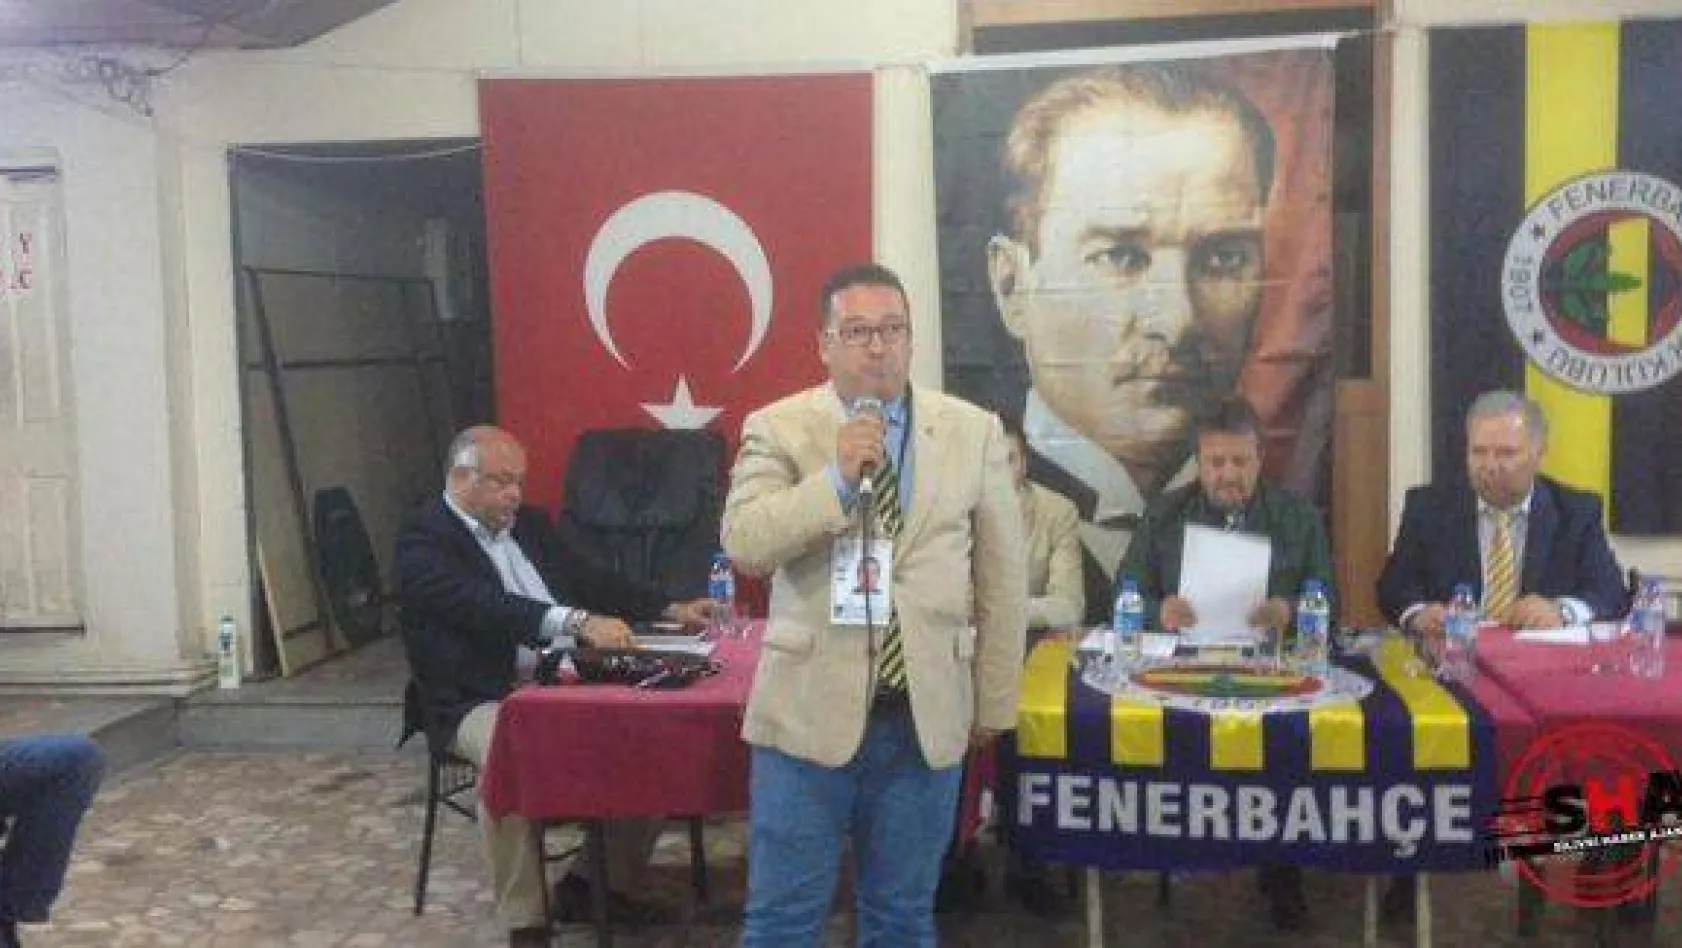 Silivri Fenerbahçe Şubesi'nde başkanlık değişimi